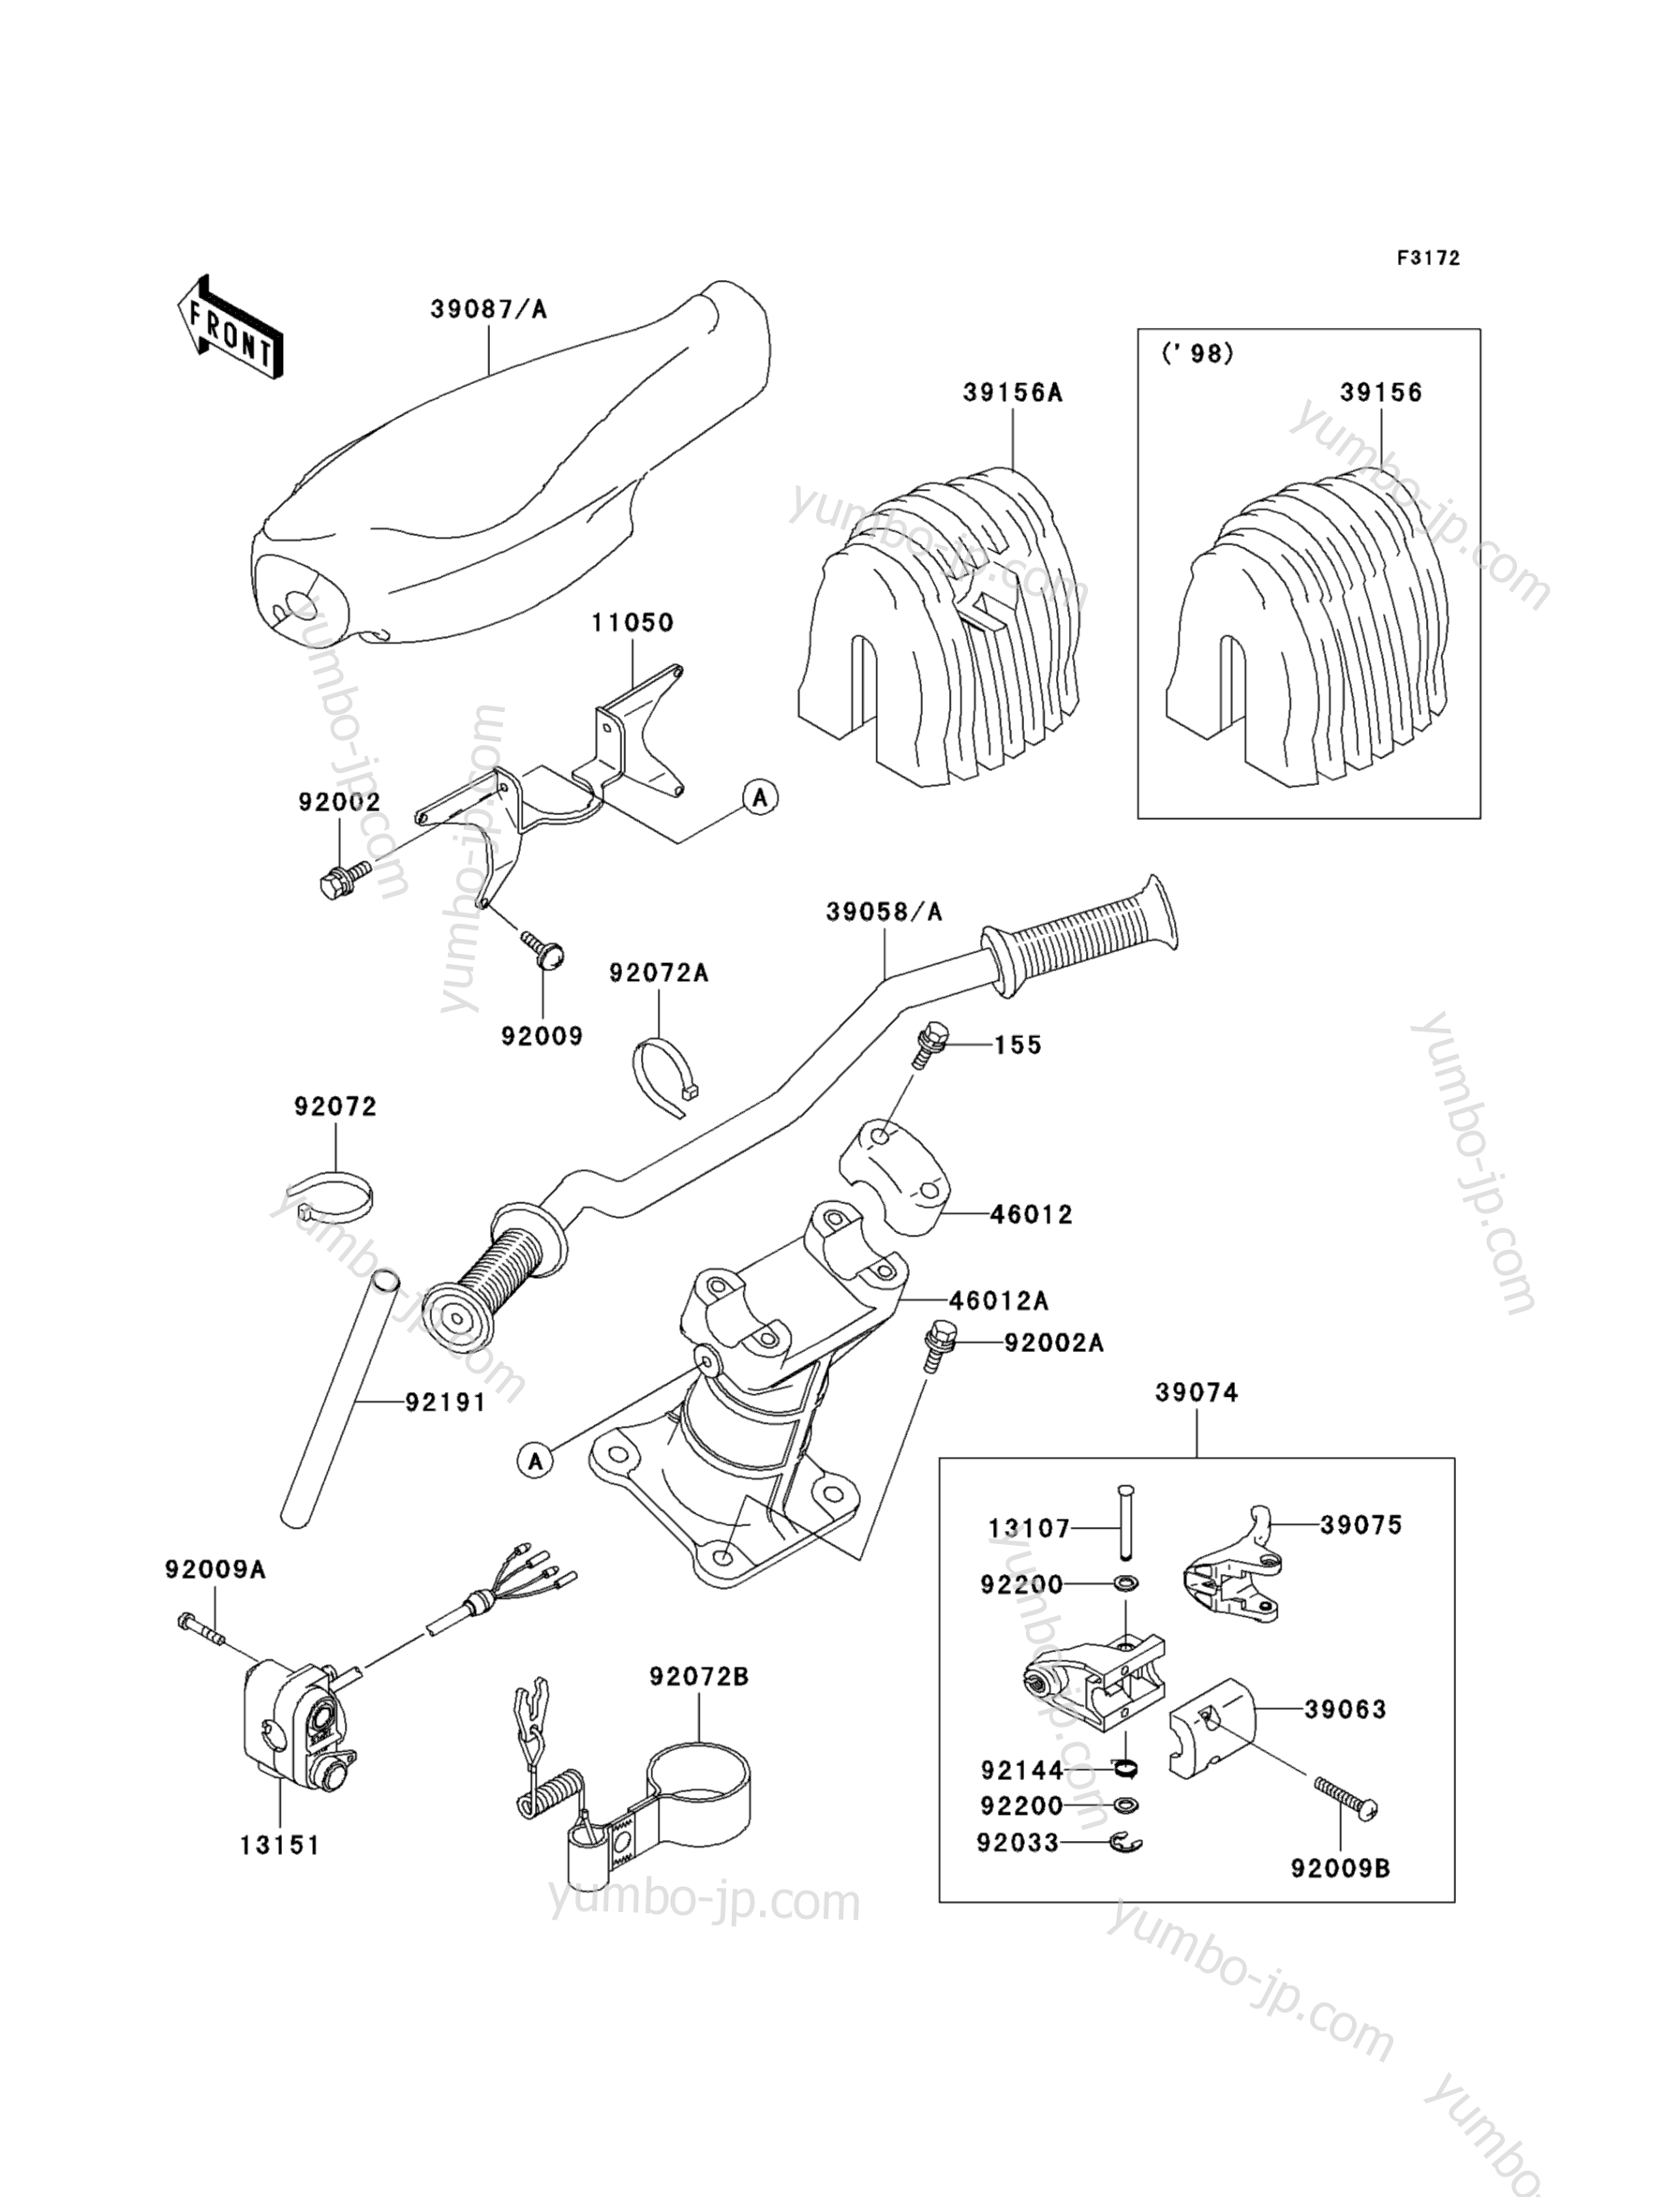 Румпель (рукоятка управления) для гидроциклов KAWASAKI JET SKI 1100 STX (JT1100-B1) 1998 г.